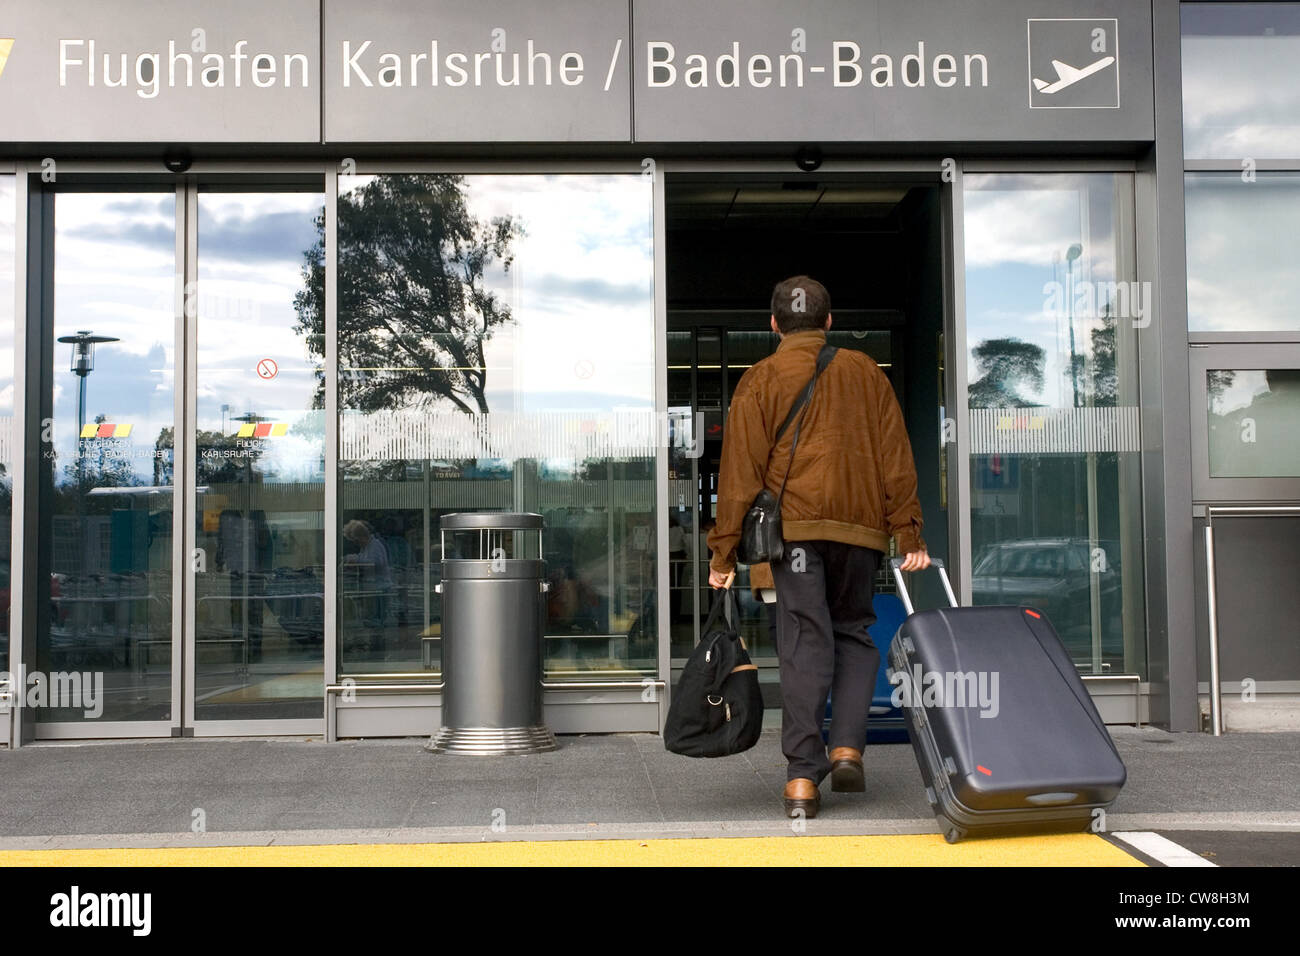 Baden-Baden, voyageurs entrant dans l'aéroport de Karlsruhe / Baden-Baden Banque D'Images